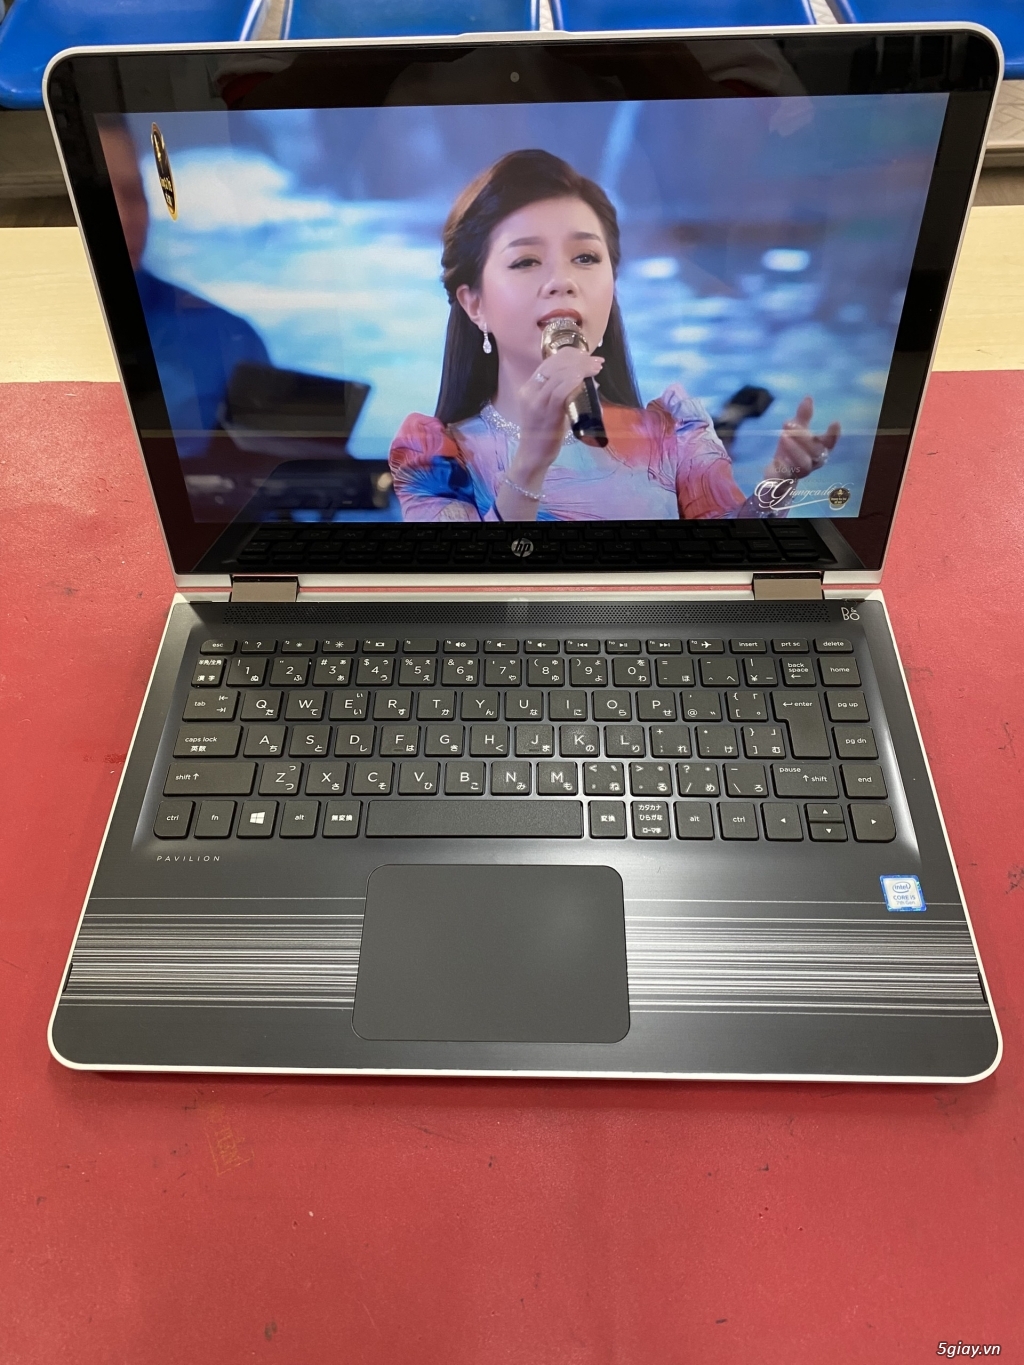 Cần bán Laptop Hp xoay 360 độ cảm ứng  Pavilion 13-u180TU x360 giá rẻ - 4